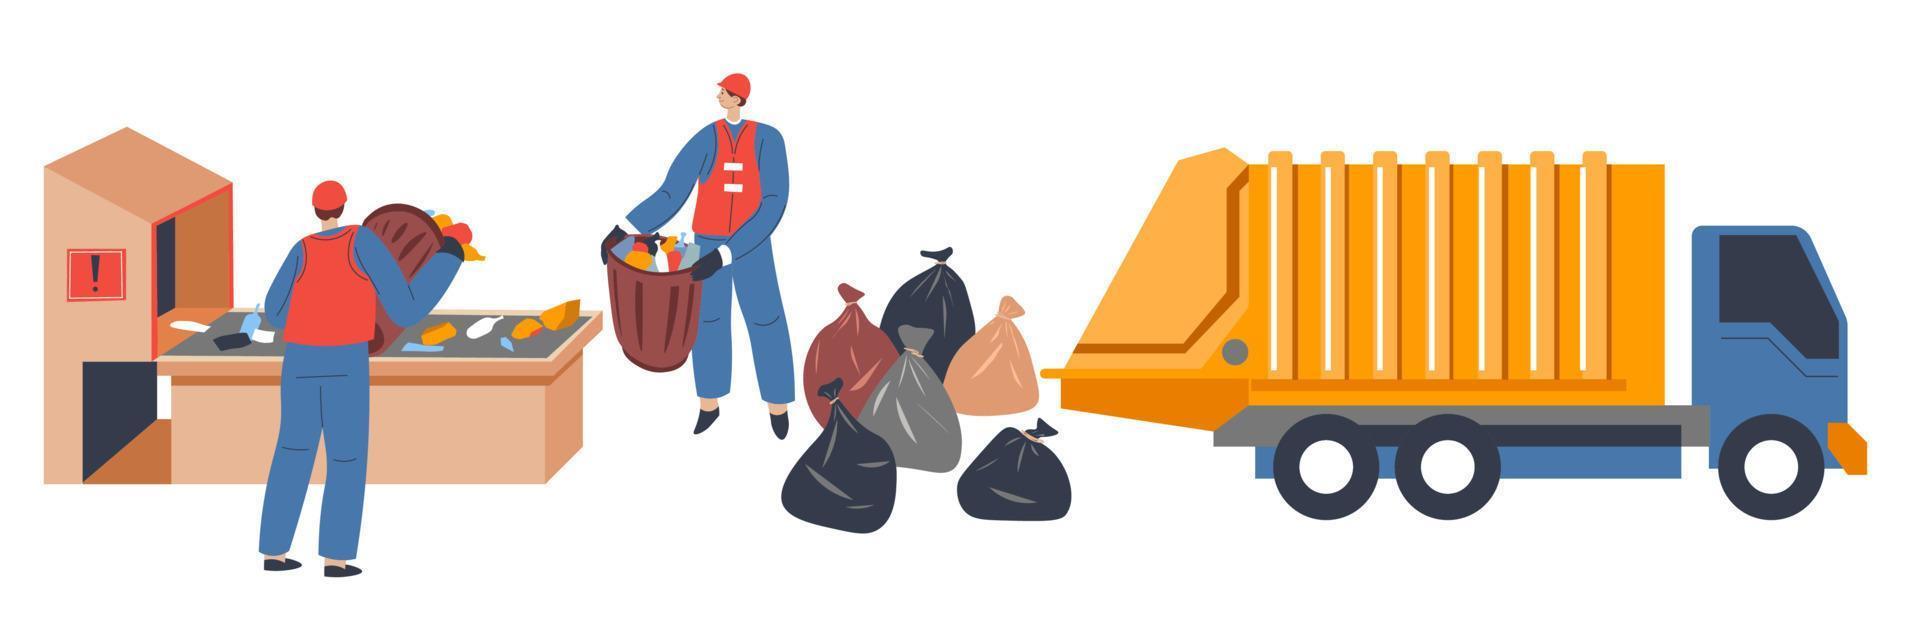 trabalhadores enchendo caminhão com lixo em sacos plásticos vetor